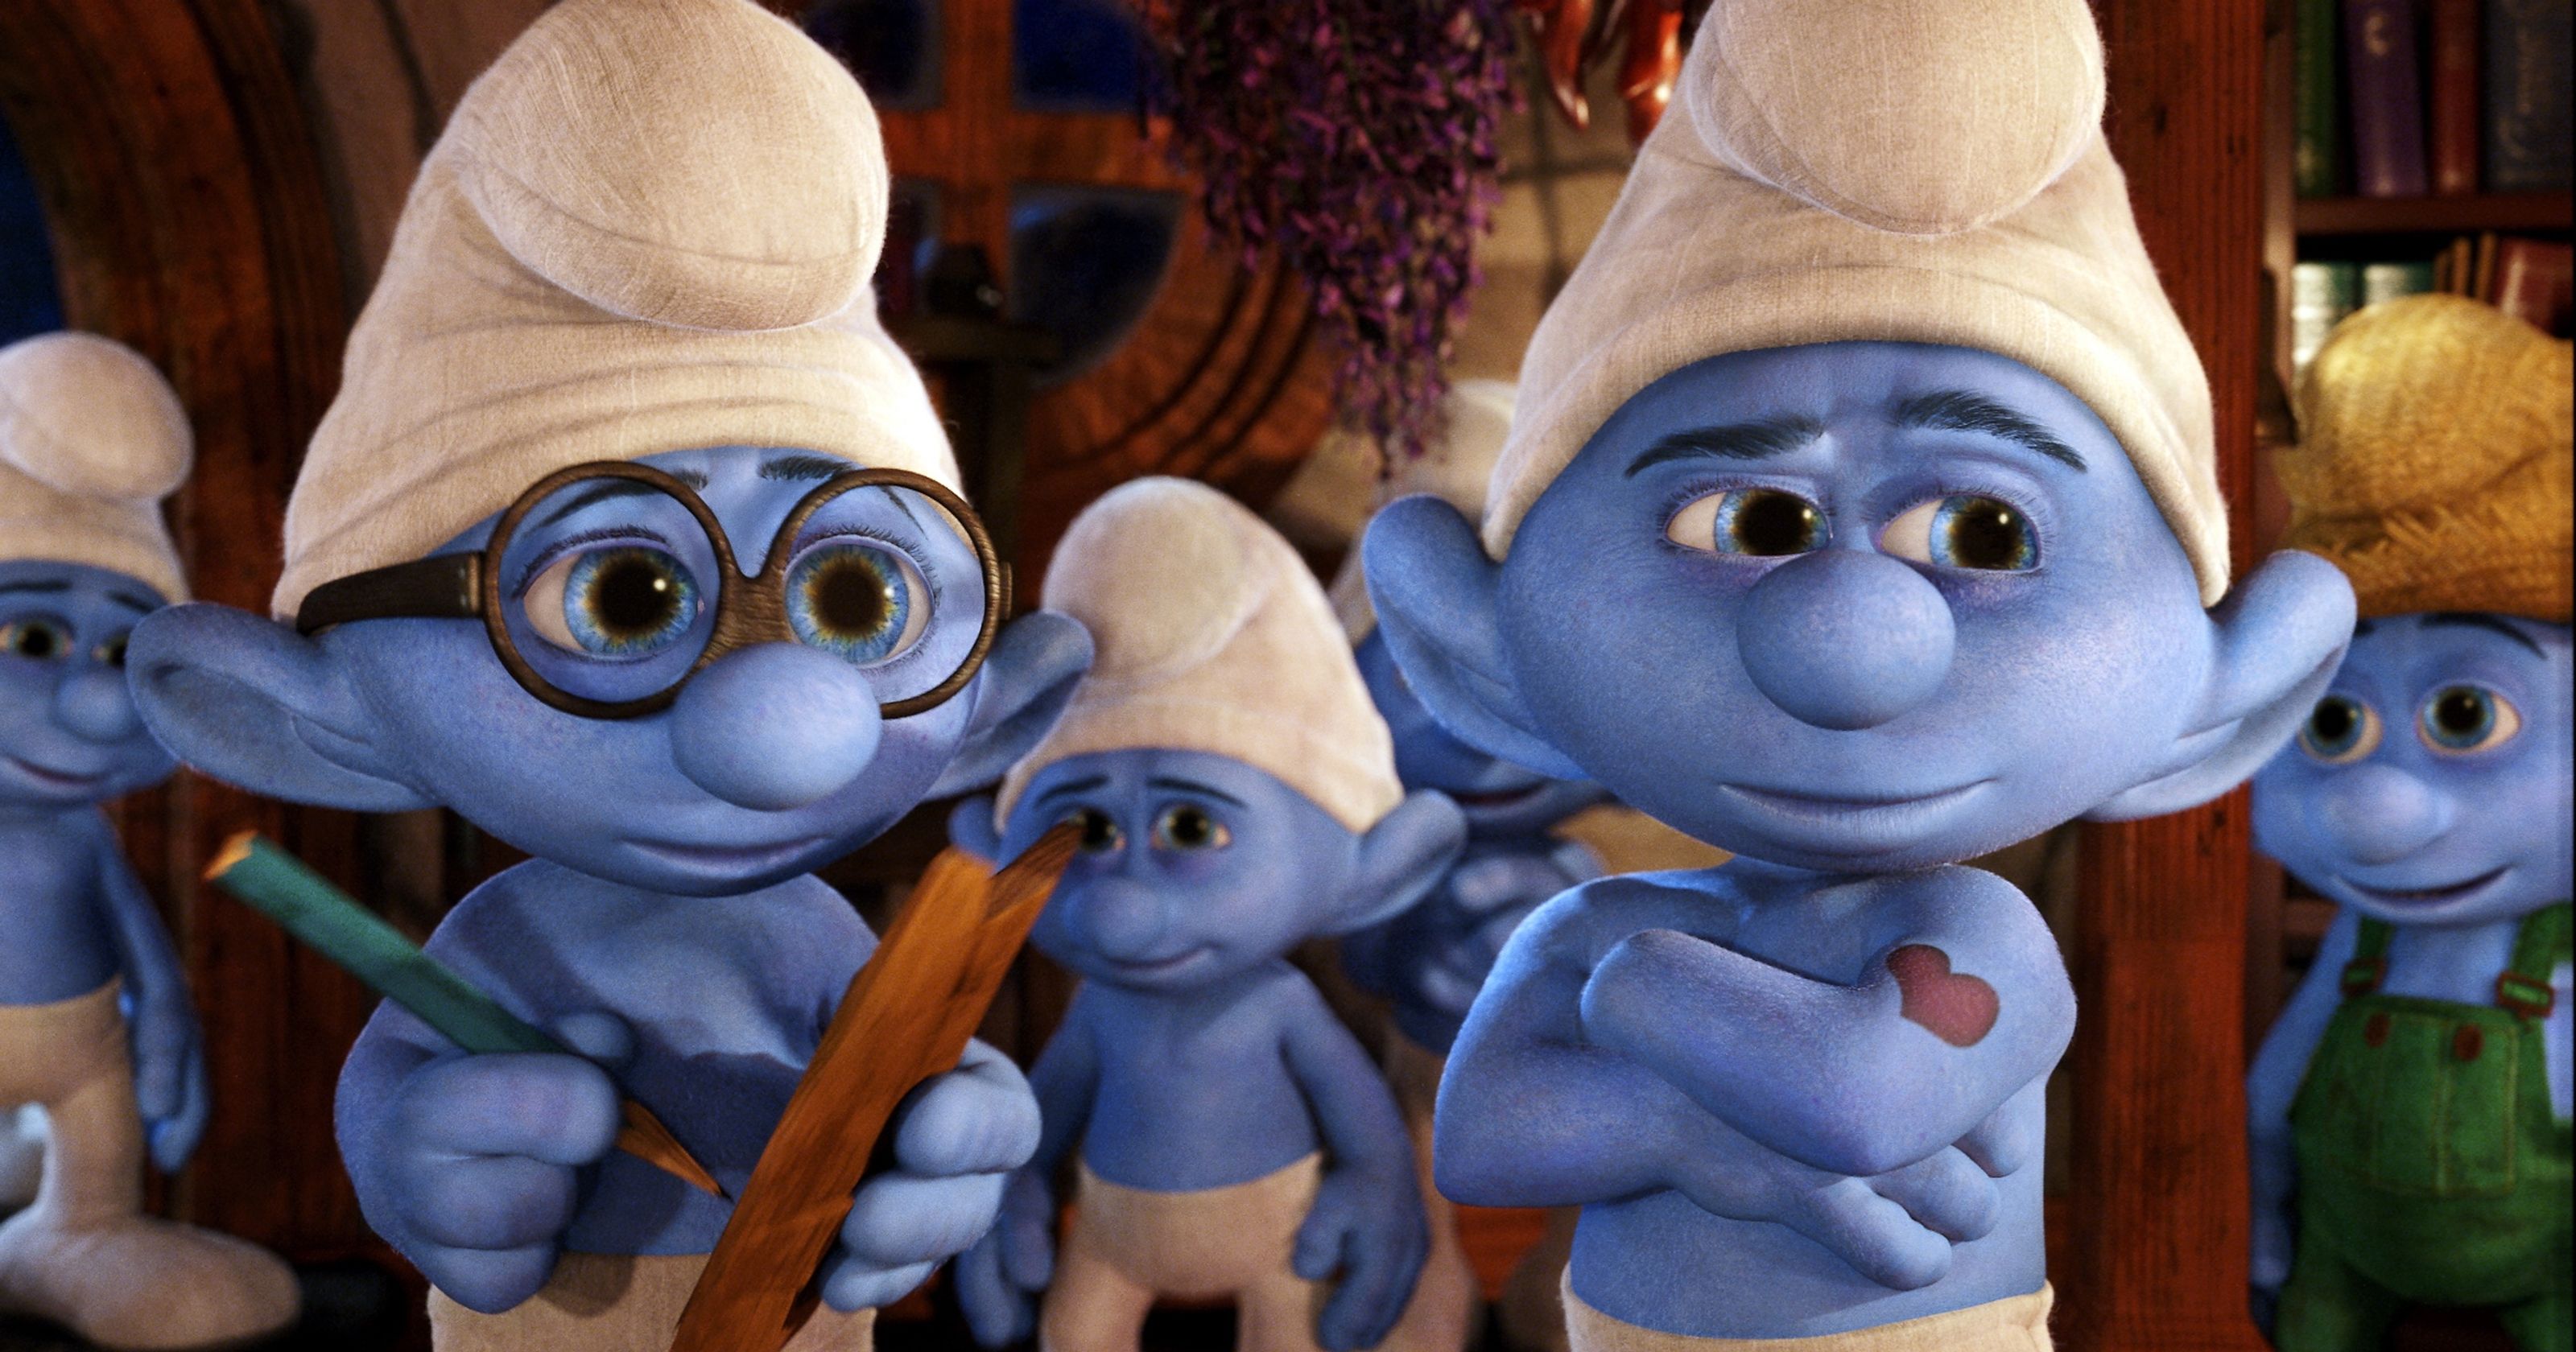 The Smurfs 2 Movie Review